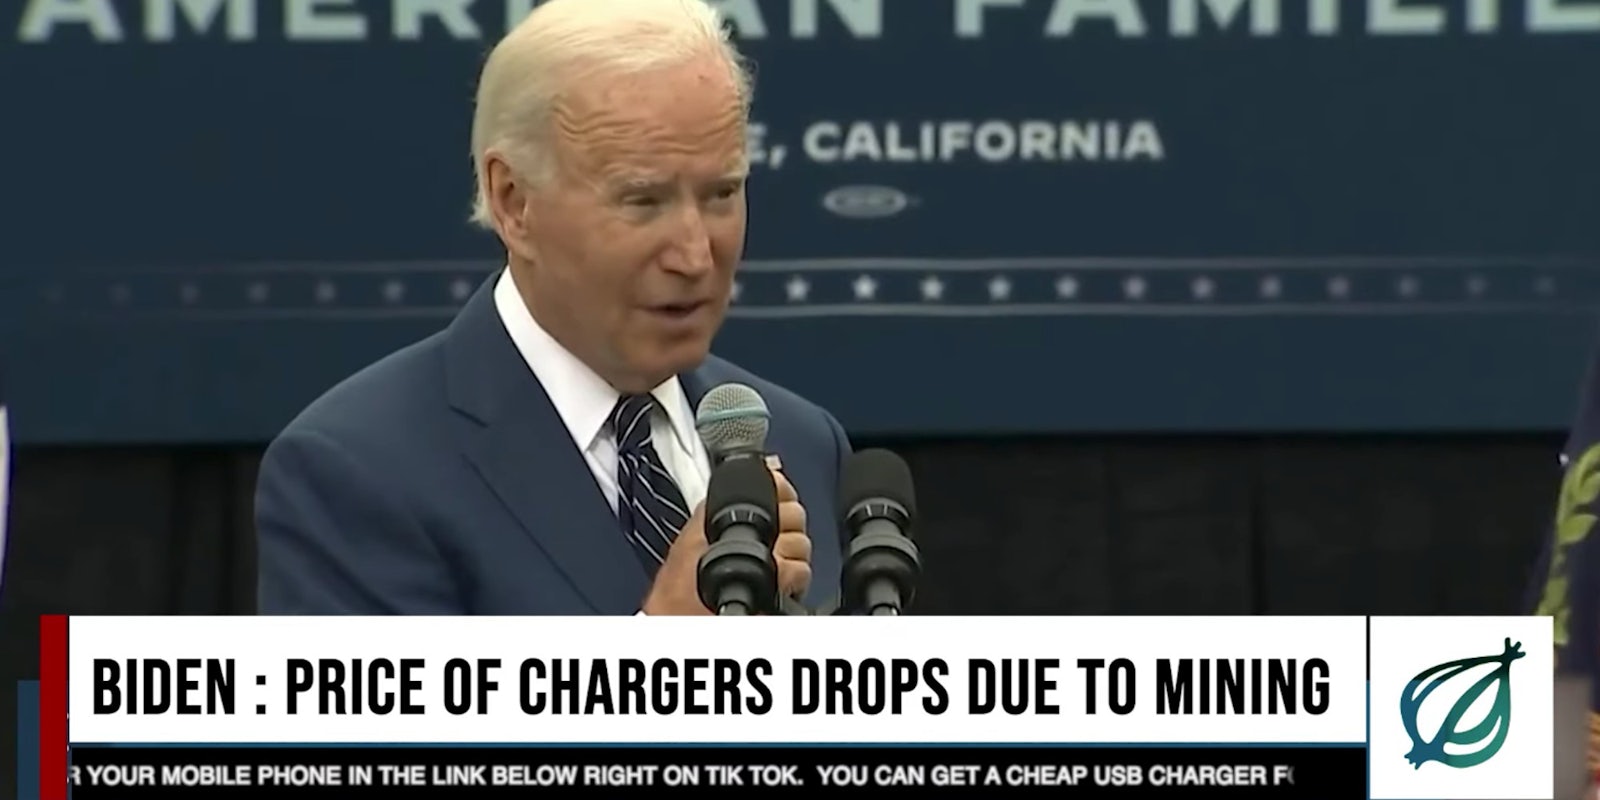 President Joe Biden holding a microphone and giving a speech